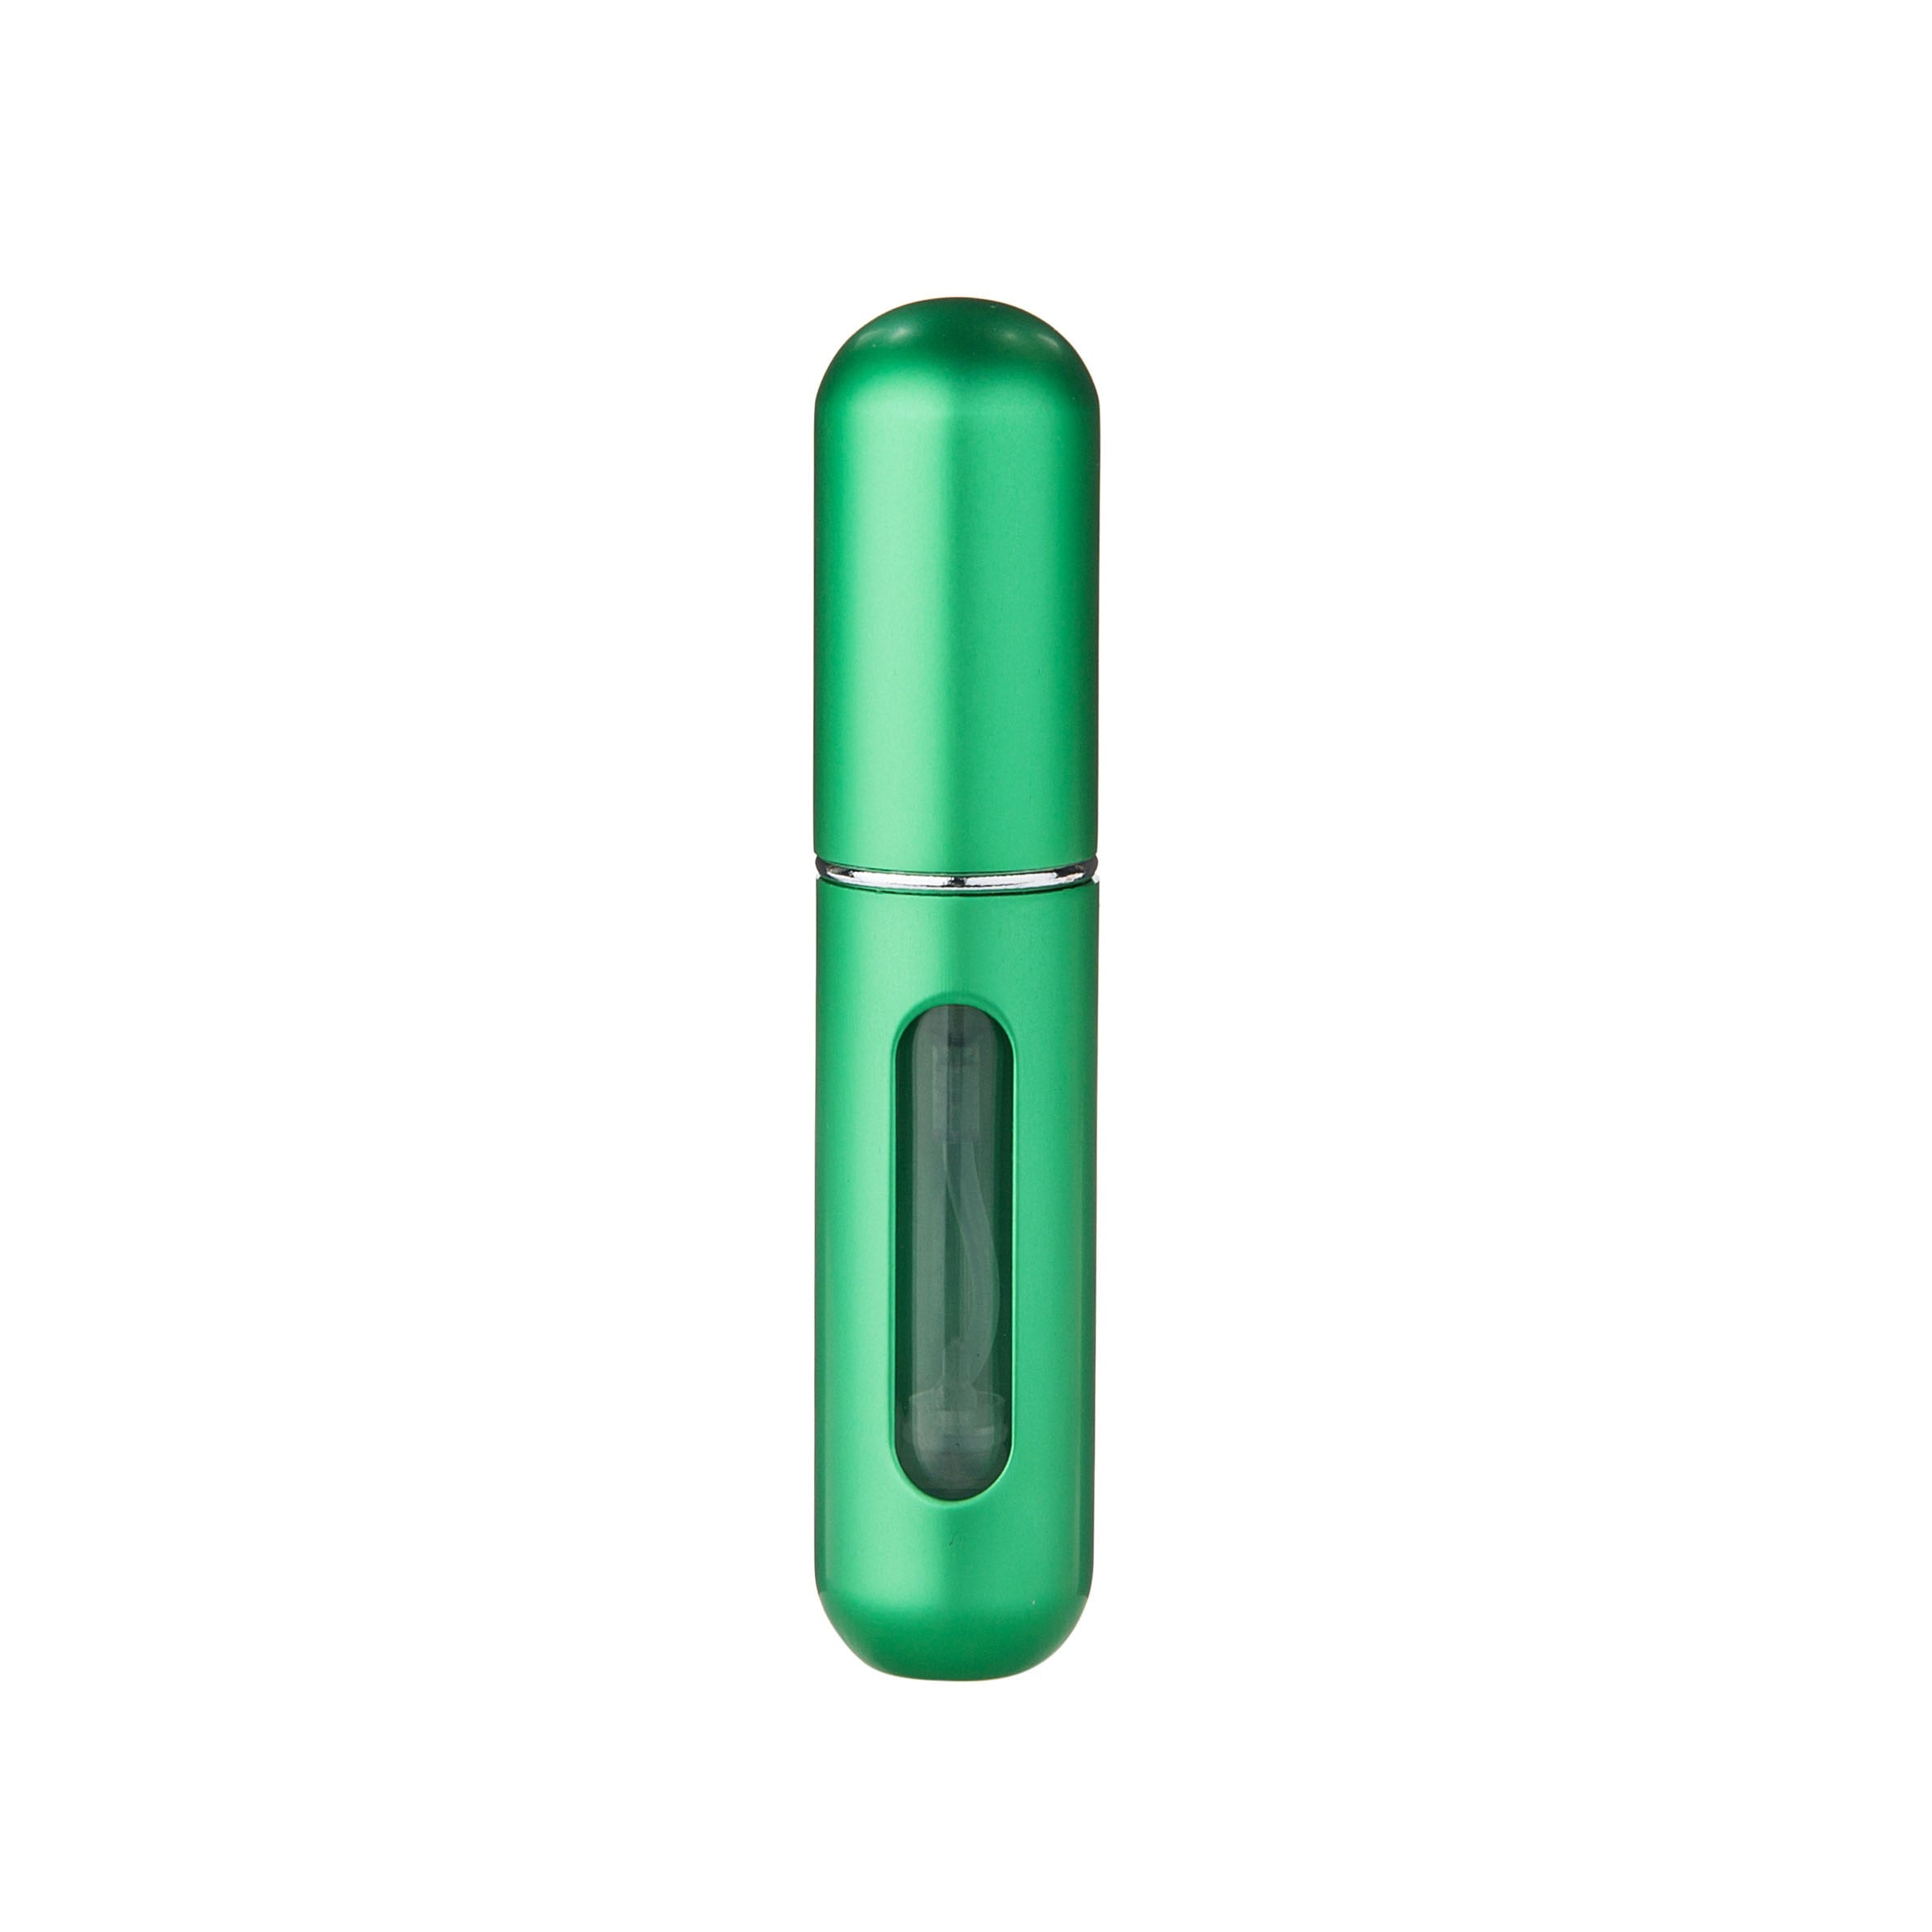 Green - 5ml Portable Mini Refillable Perfume Bottle - Travel Spray Atomizer Bottle